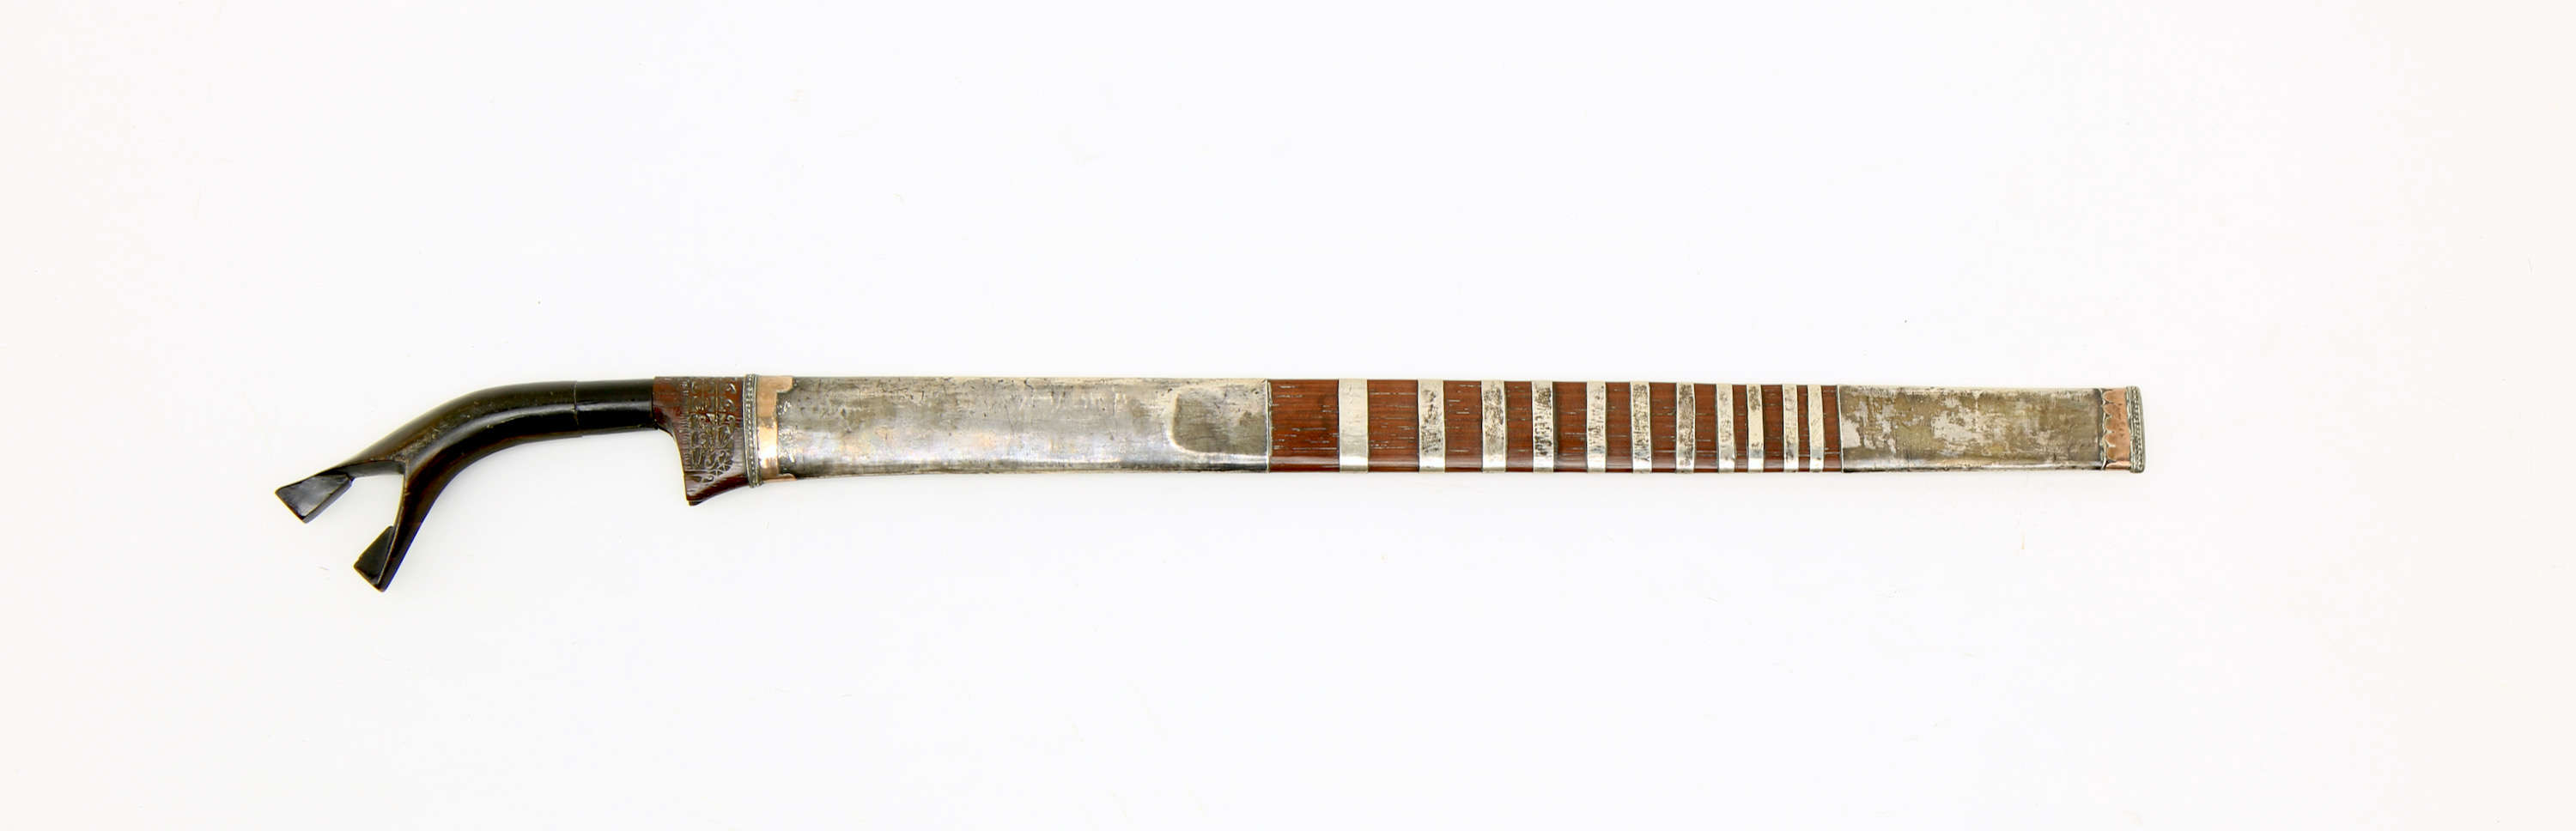 A Batak kalasan sword